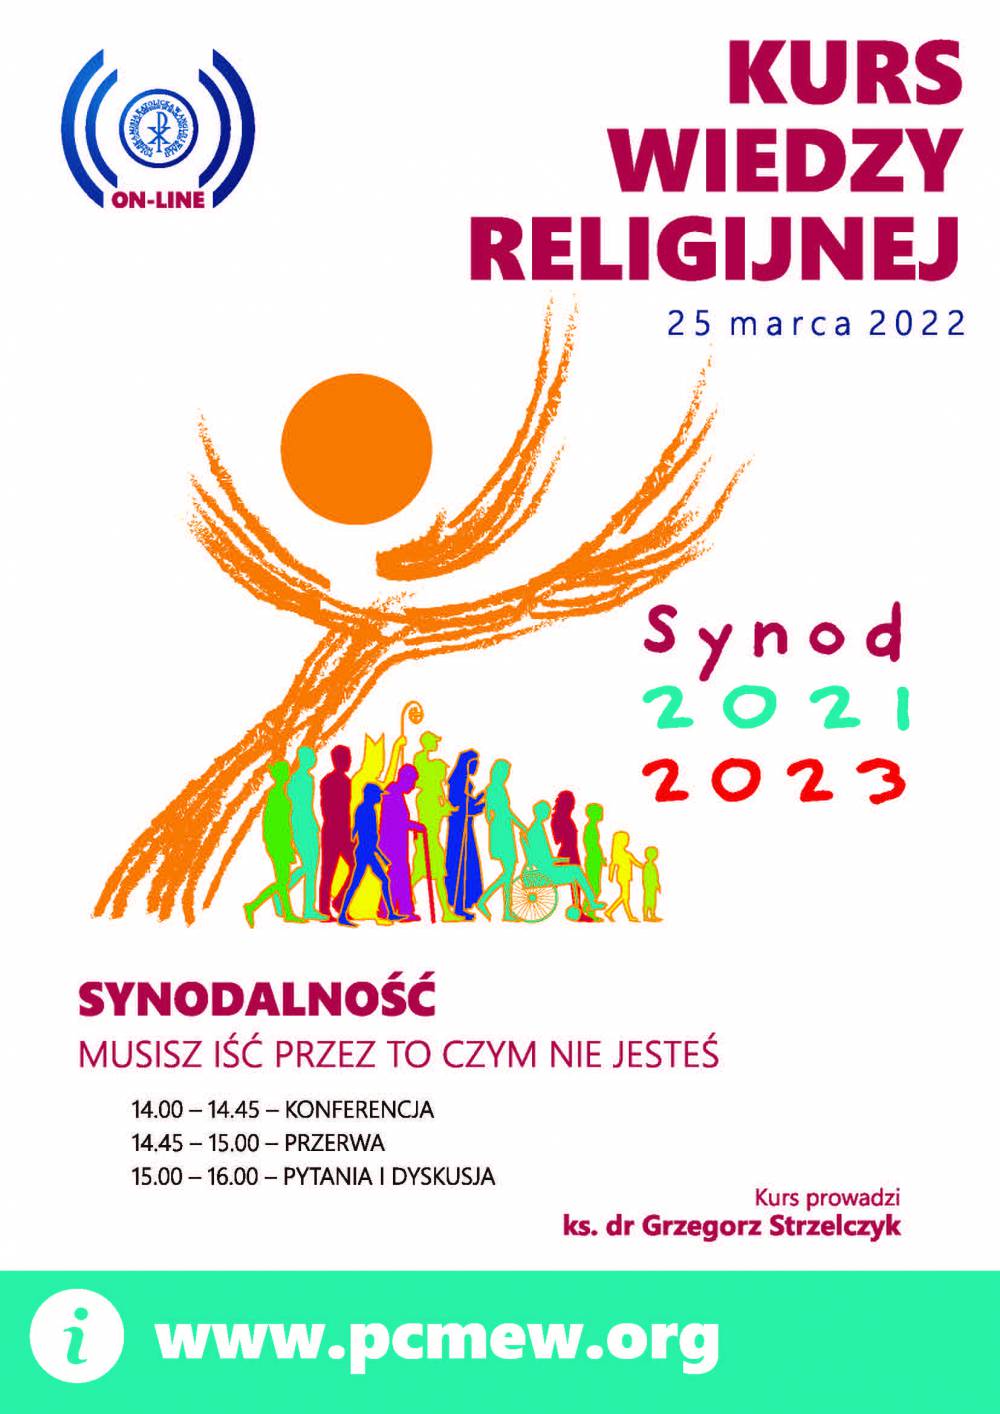 Kurs Wiedzy Religijnej, który w tym roku odbędzie się w formie online 25 marca 2022.